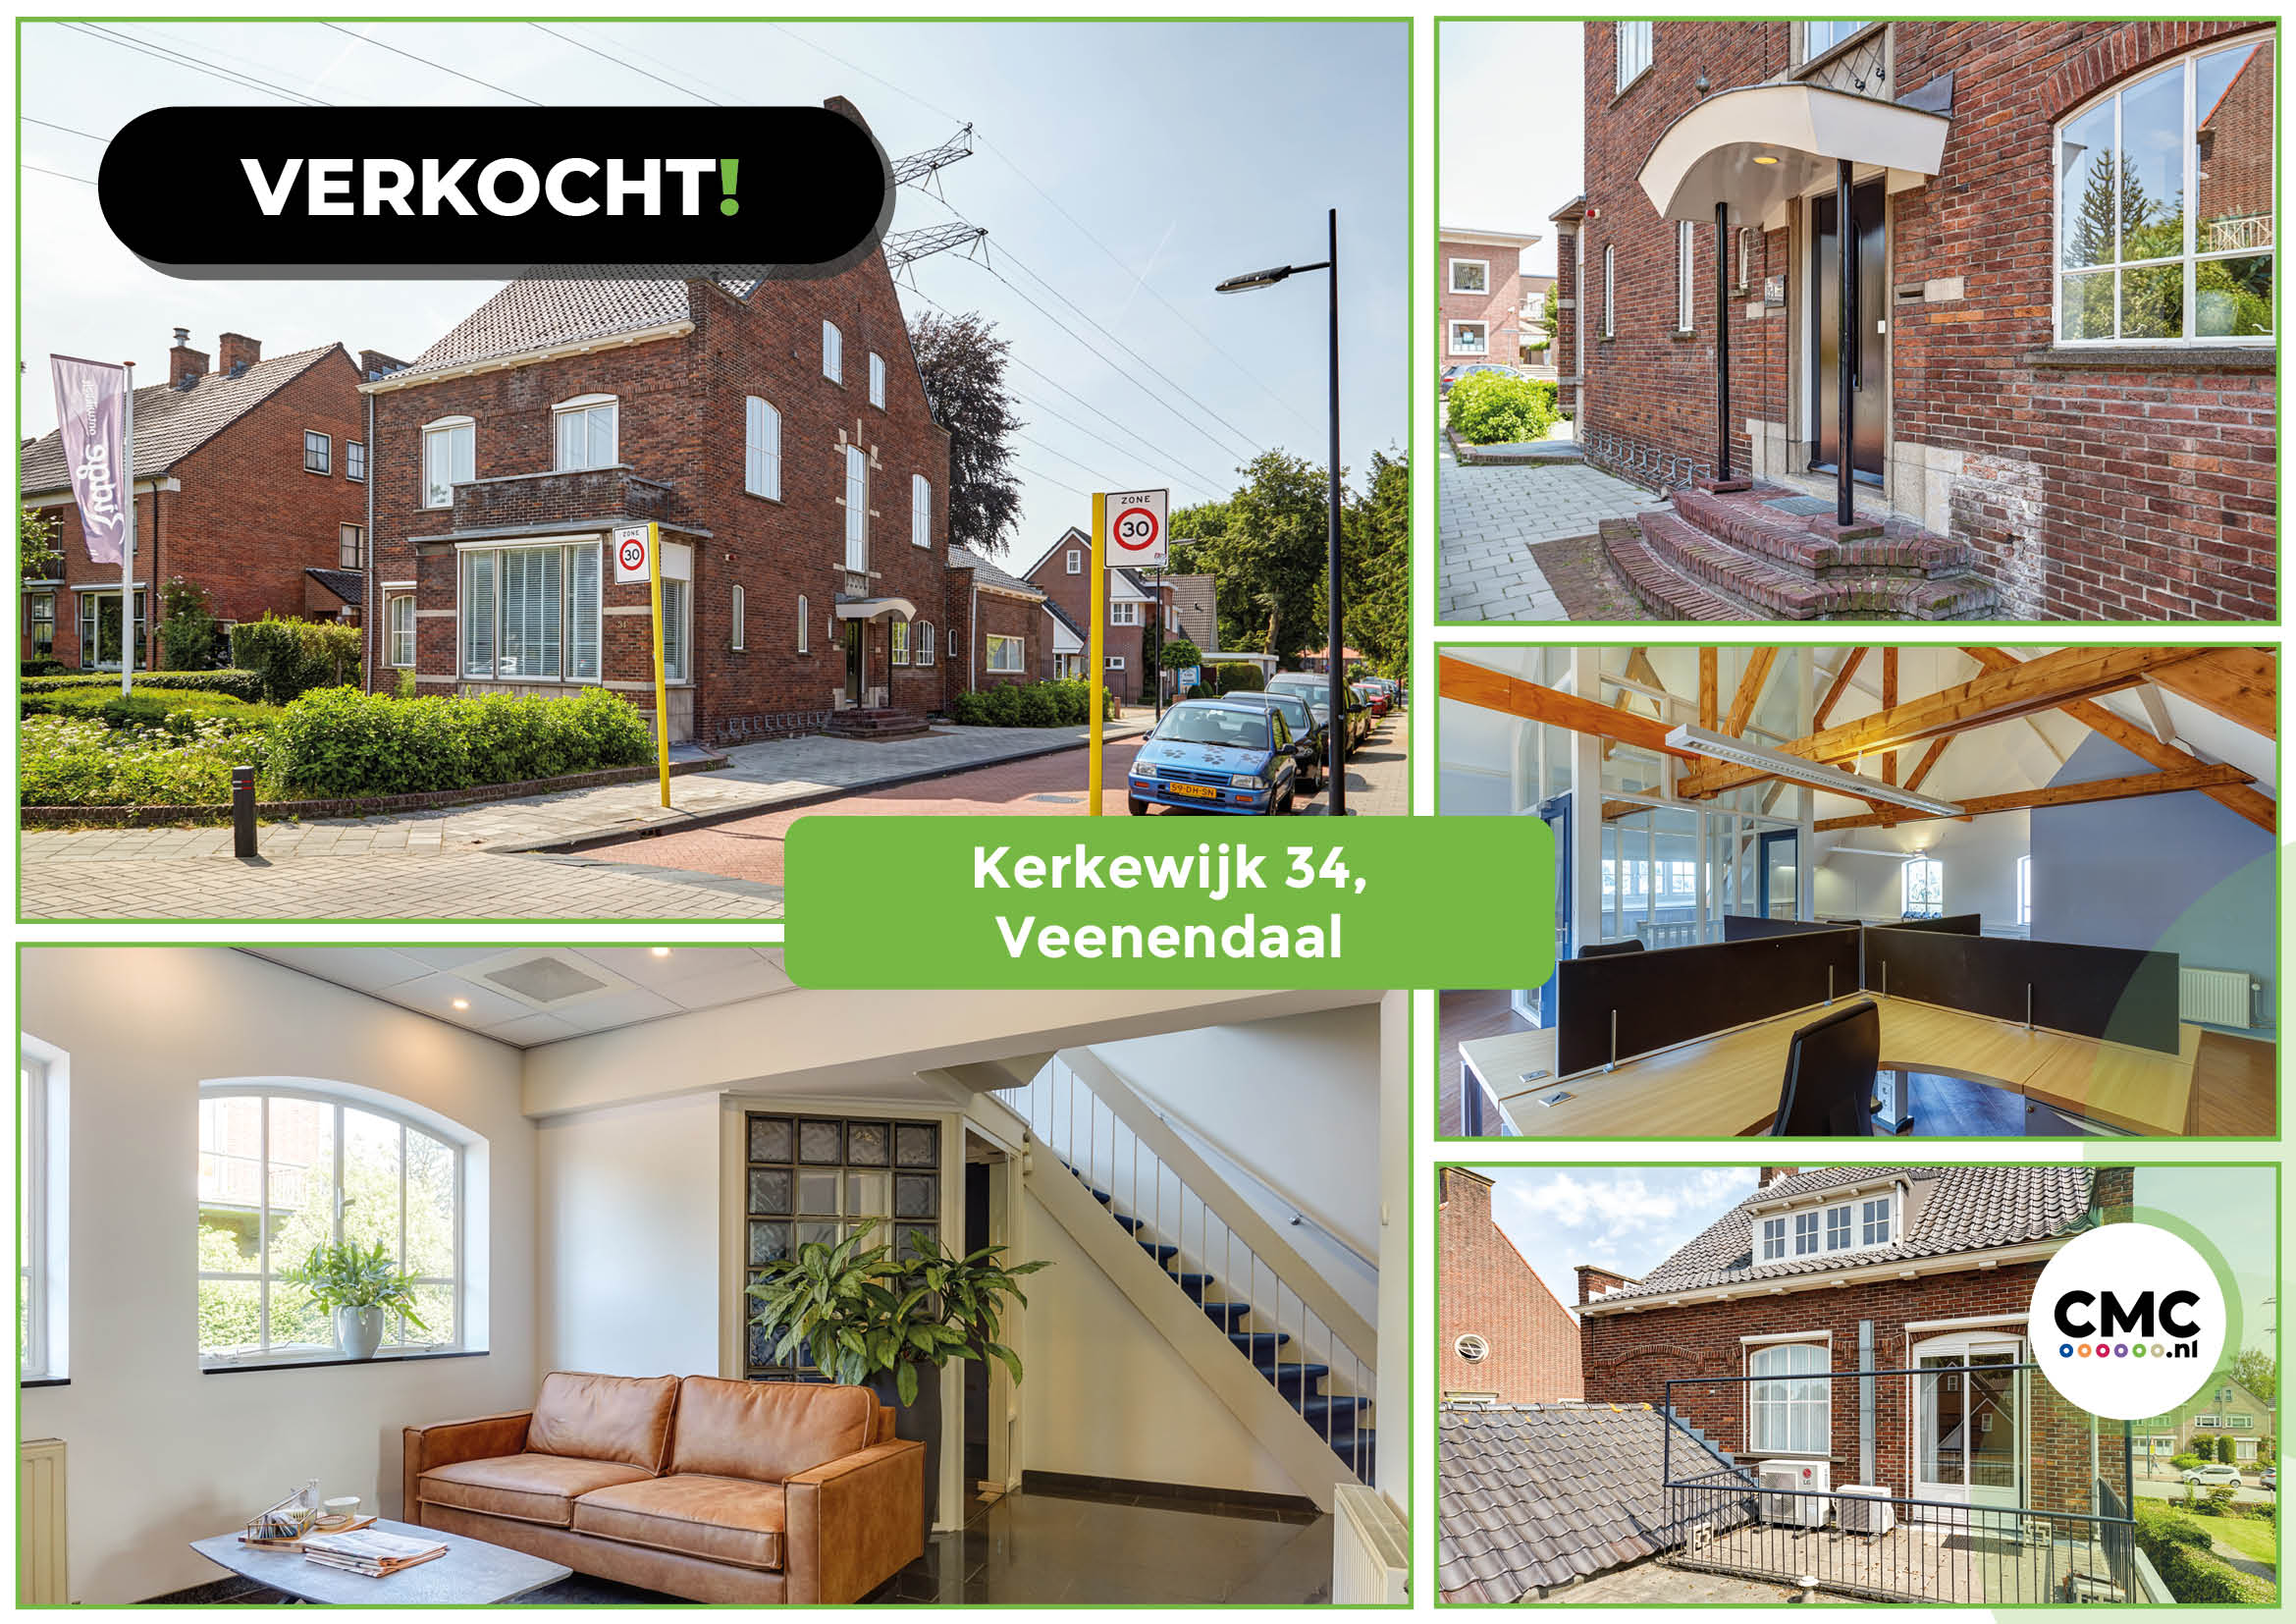 Nieuwe deal! Kantoorvilla Kerkewijk 34, Veenendaal verkocht!